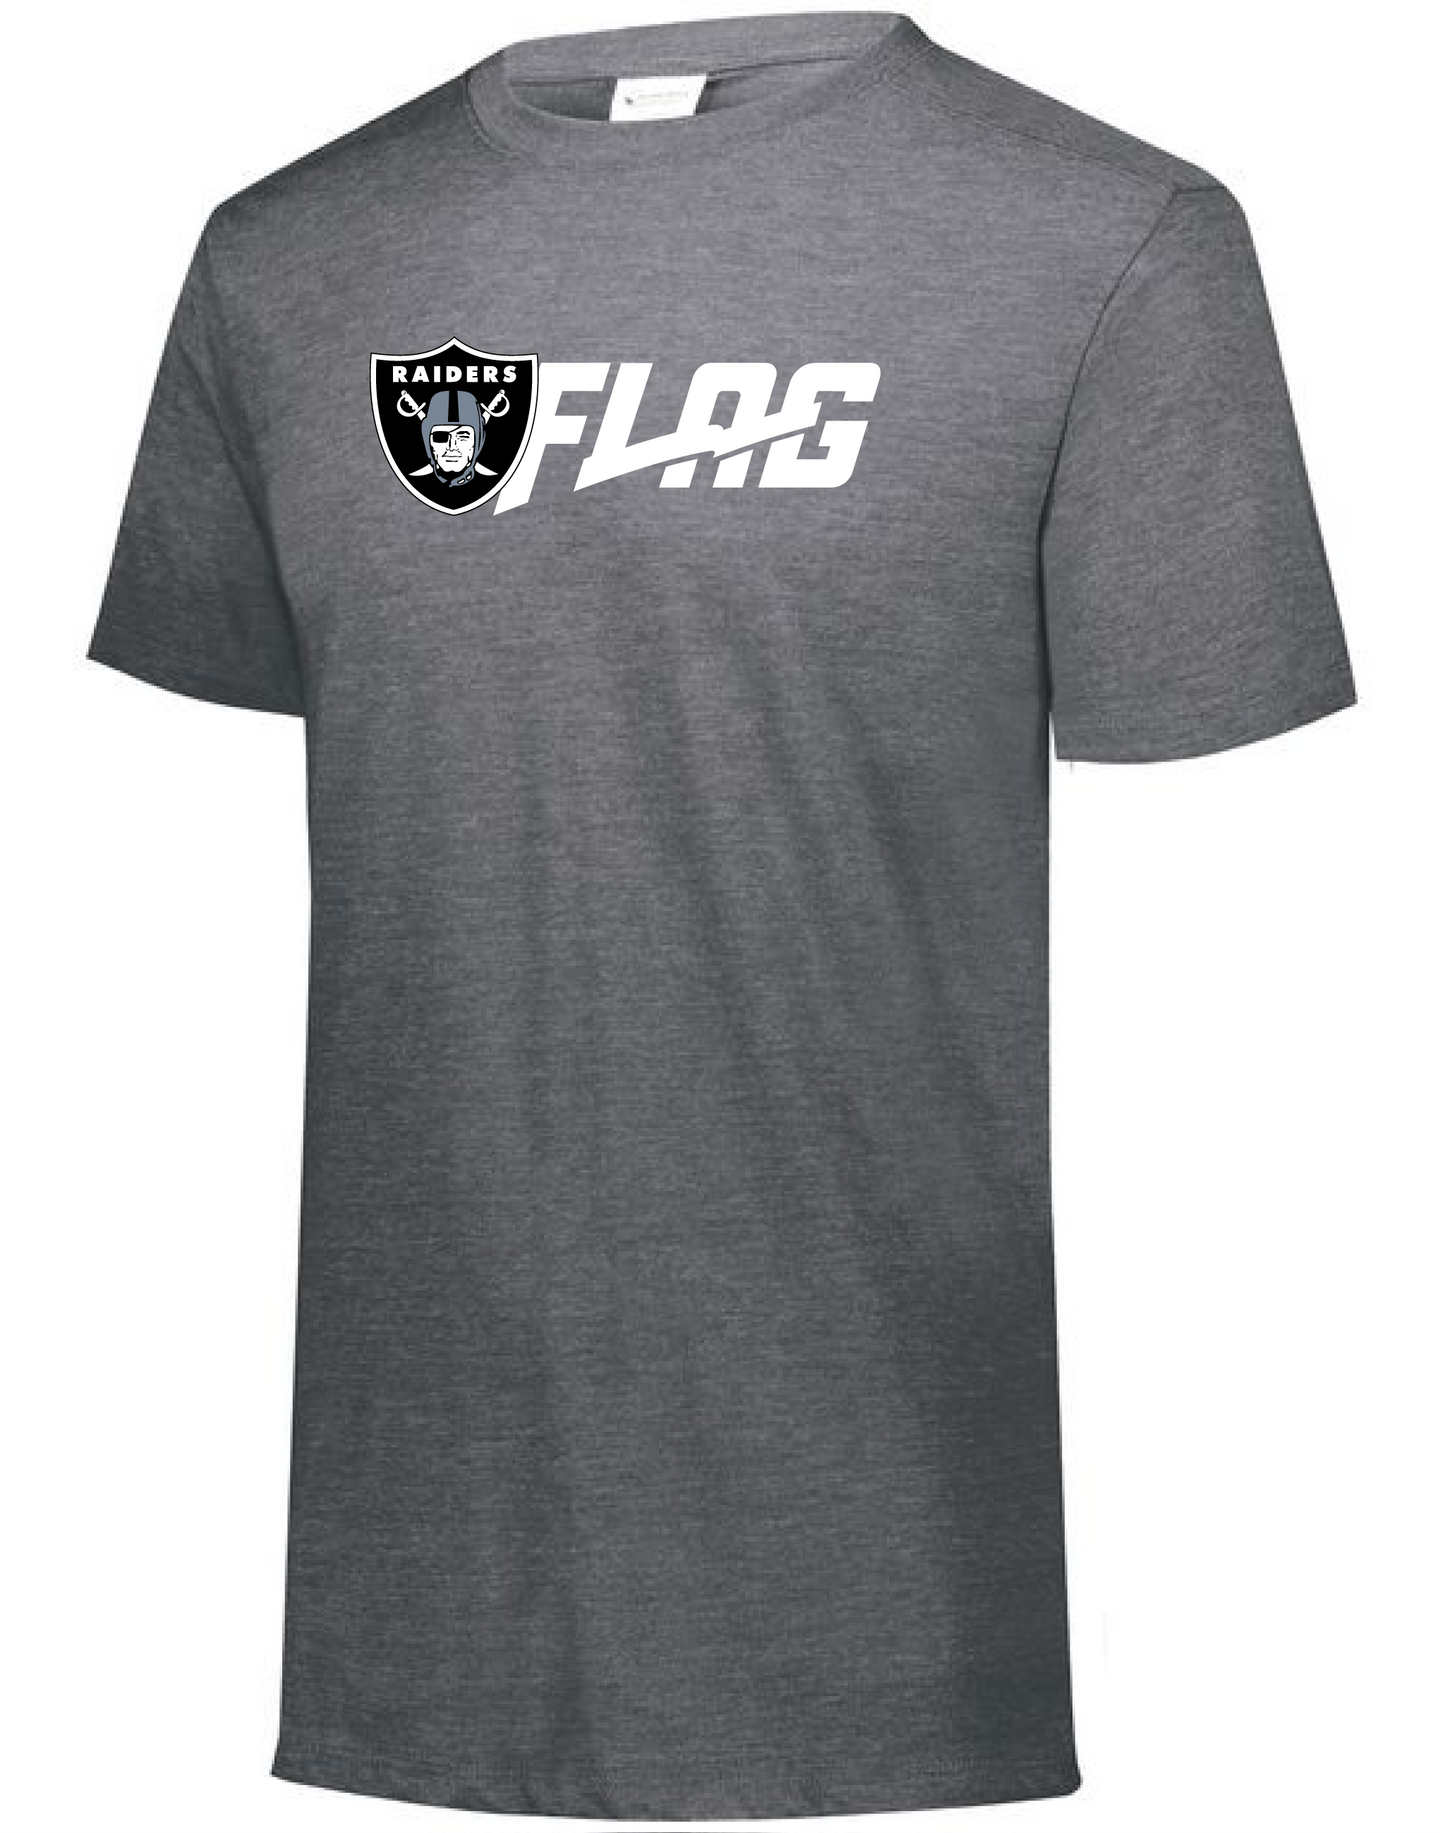 Tri Blend T Shirt - Youth - Las Vegas Raiders